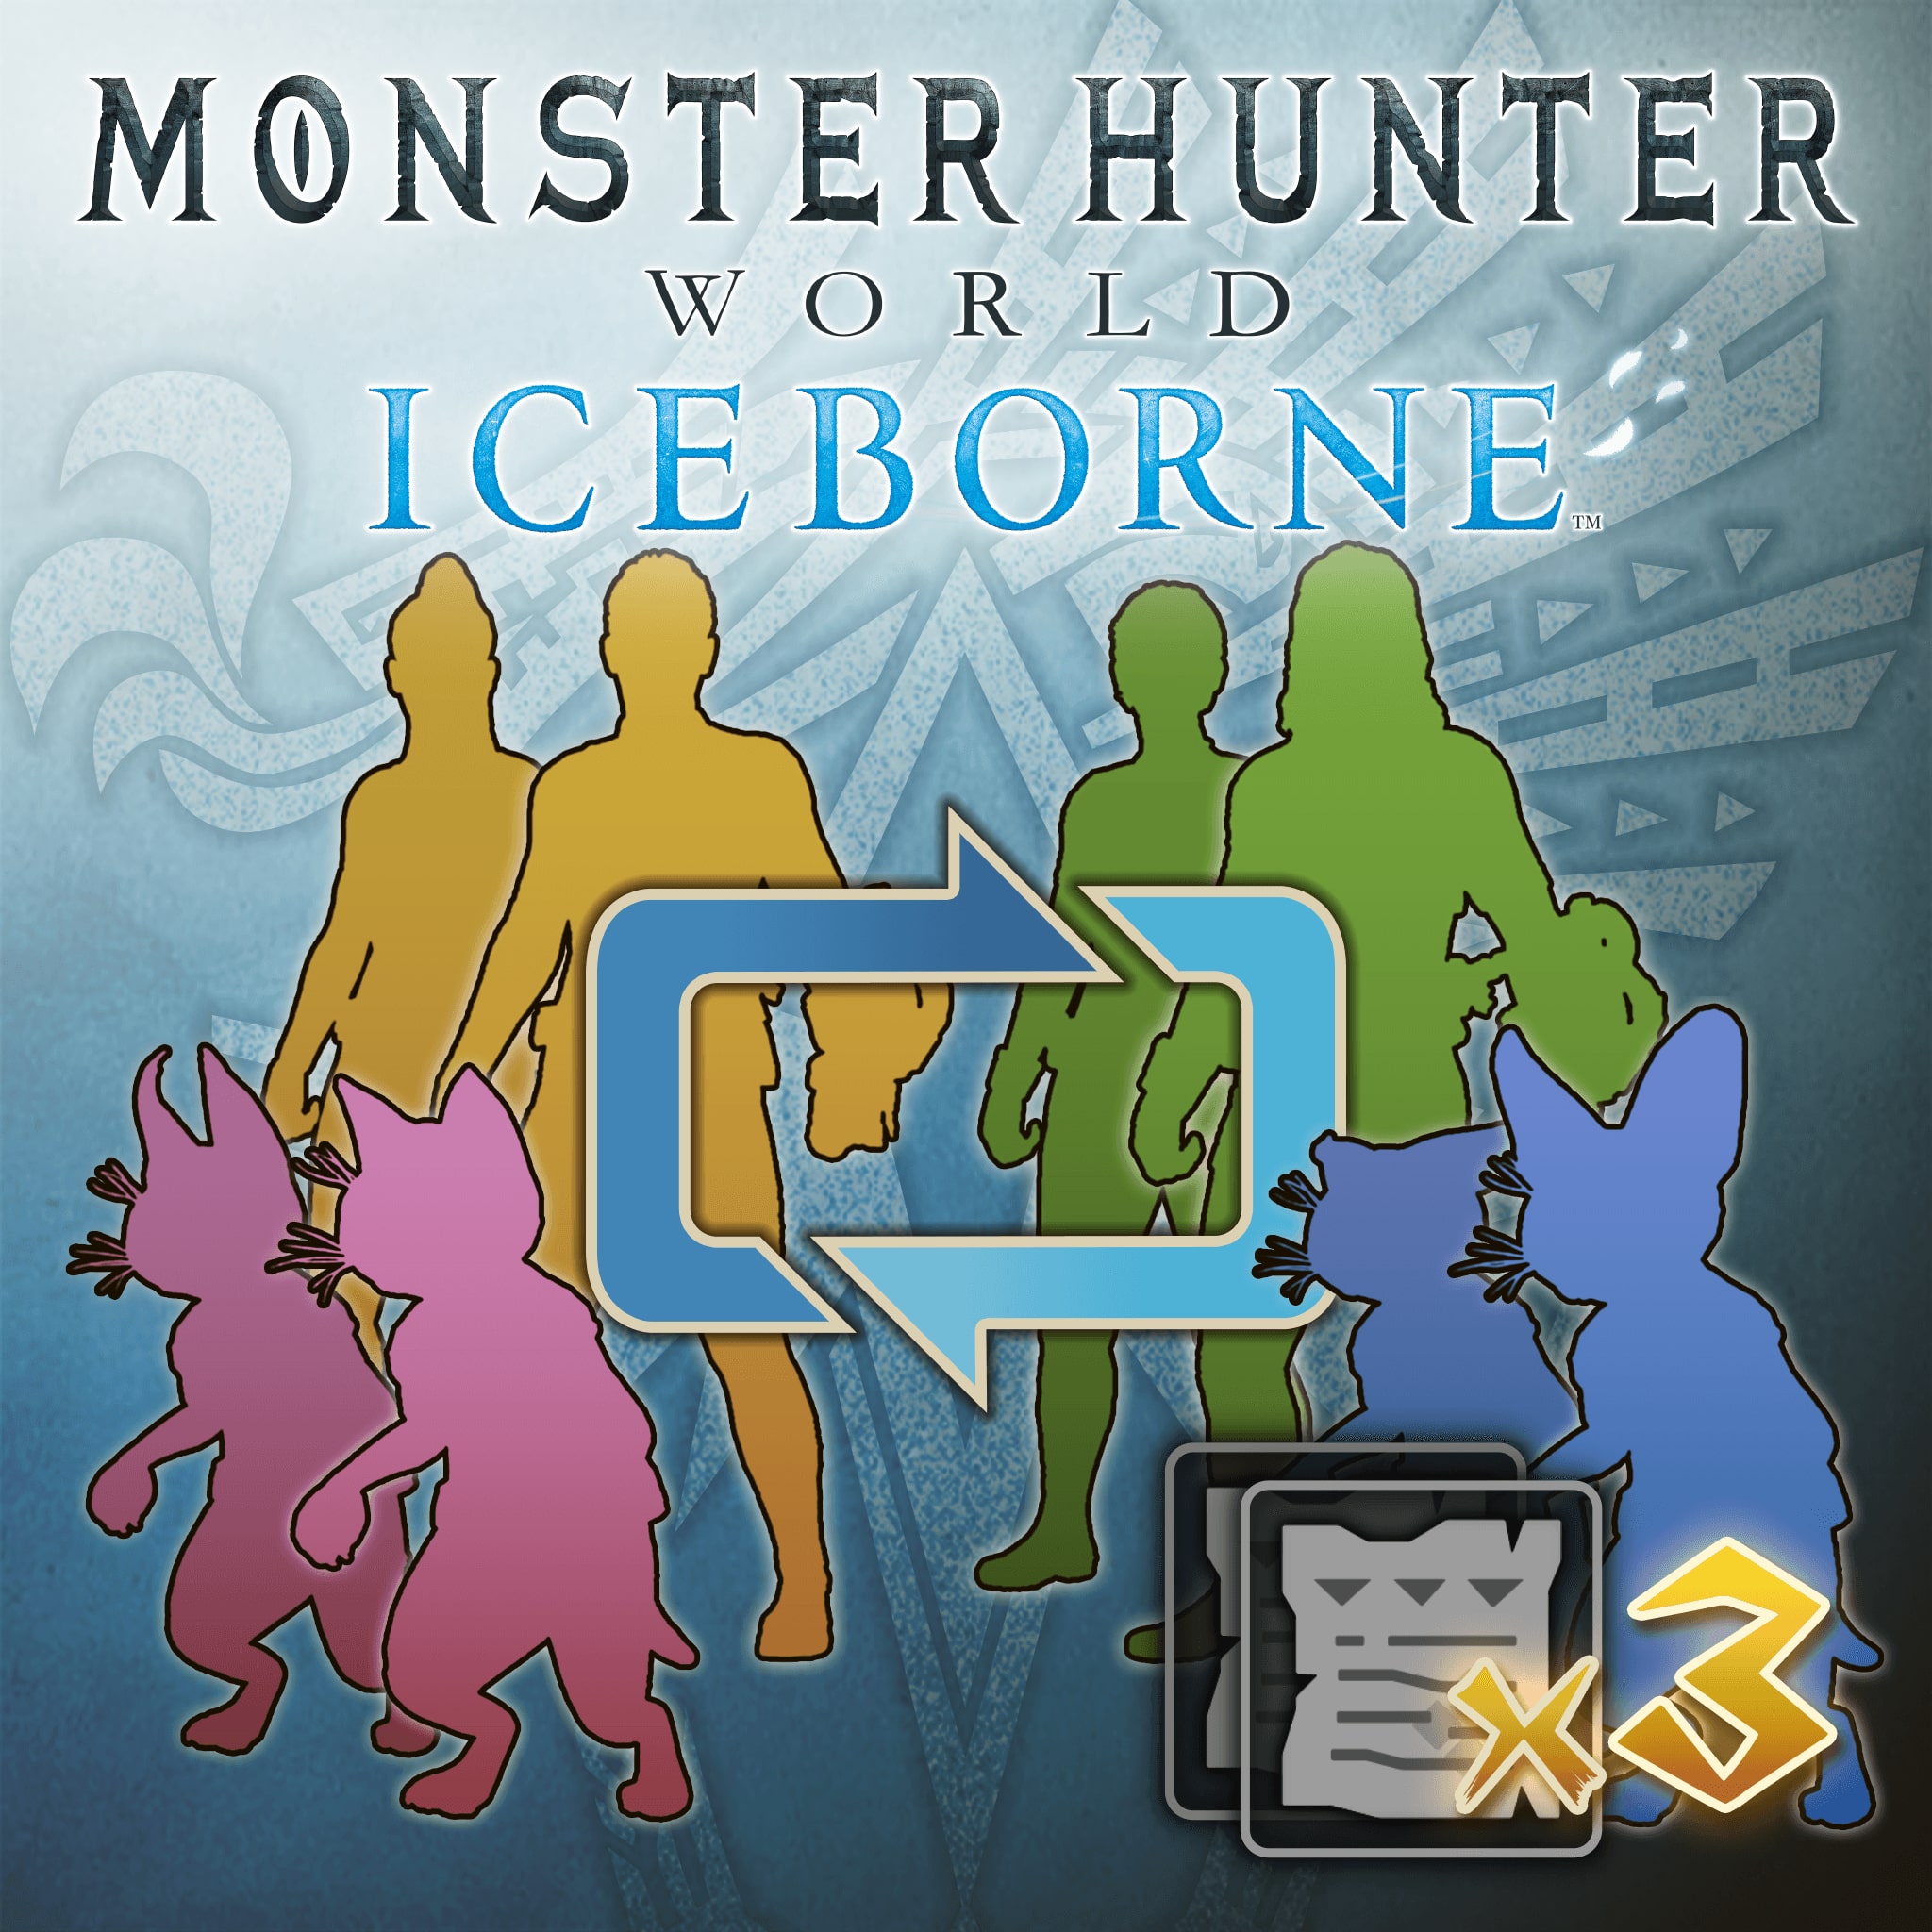 MHW:Iceborne - شخصية وإيصال تعديل باليكو: حزمة من ثلاثة إيصالا